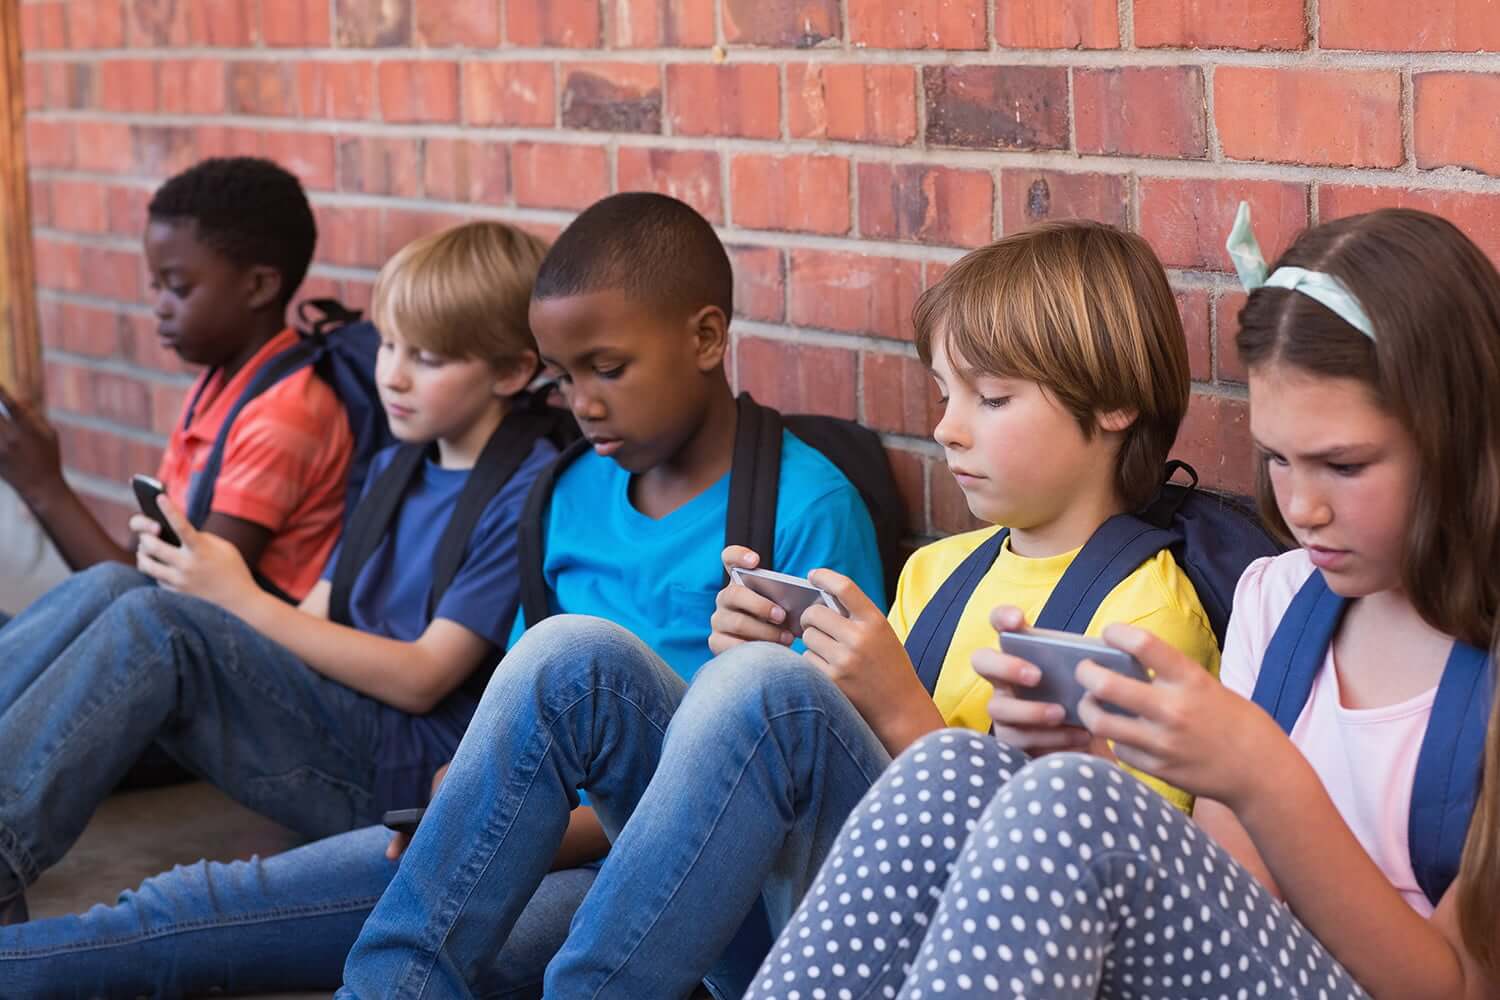 法国出台严格手机禁令 禁止3-15岁学生在校使用手机